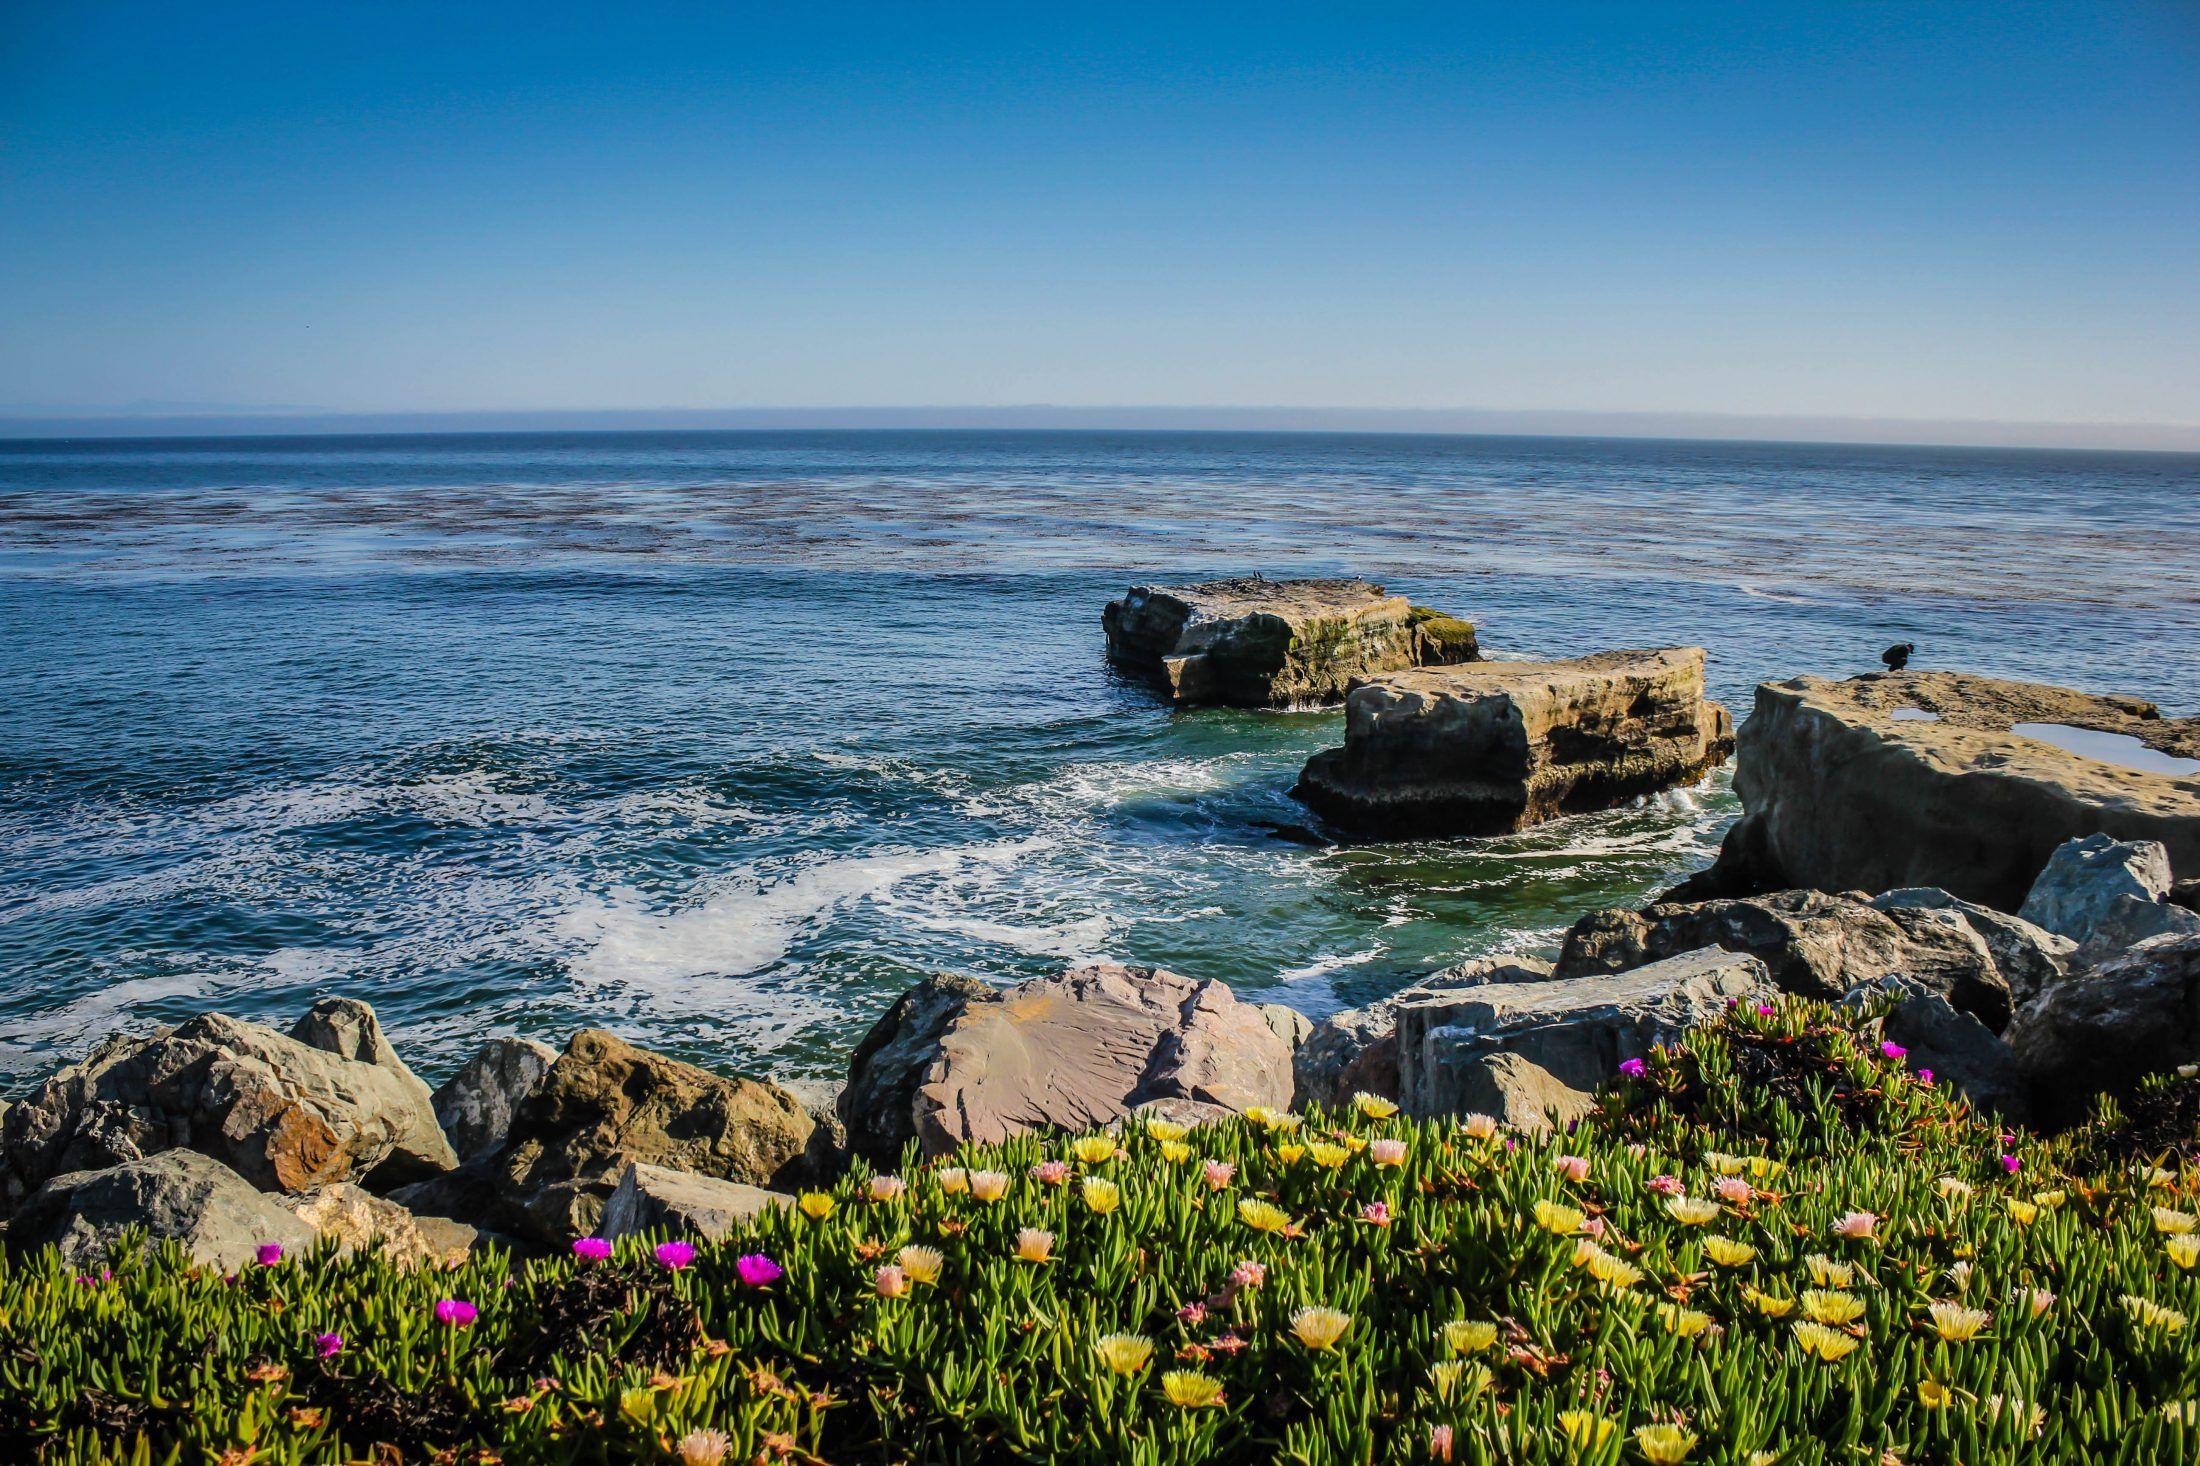 HD Wallpaper: The ocean view from Santa Cruz, CA